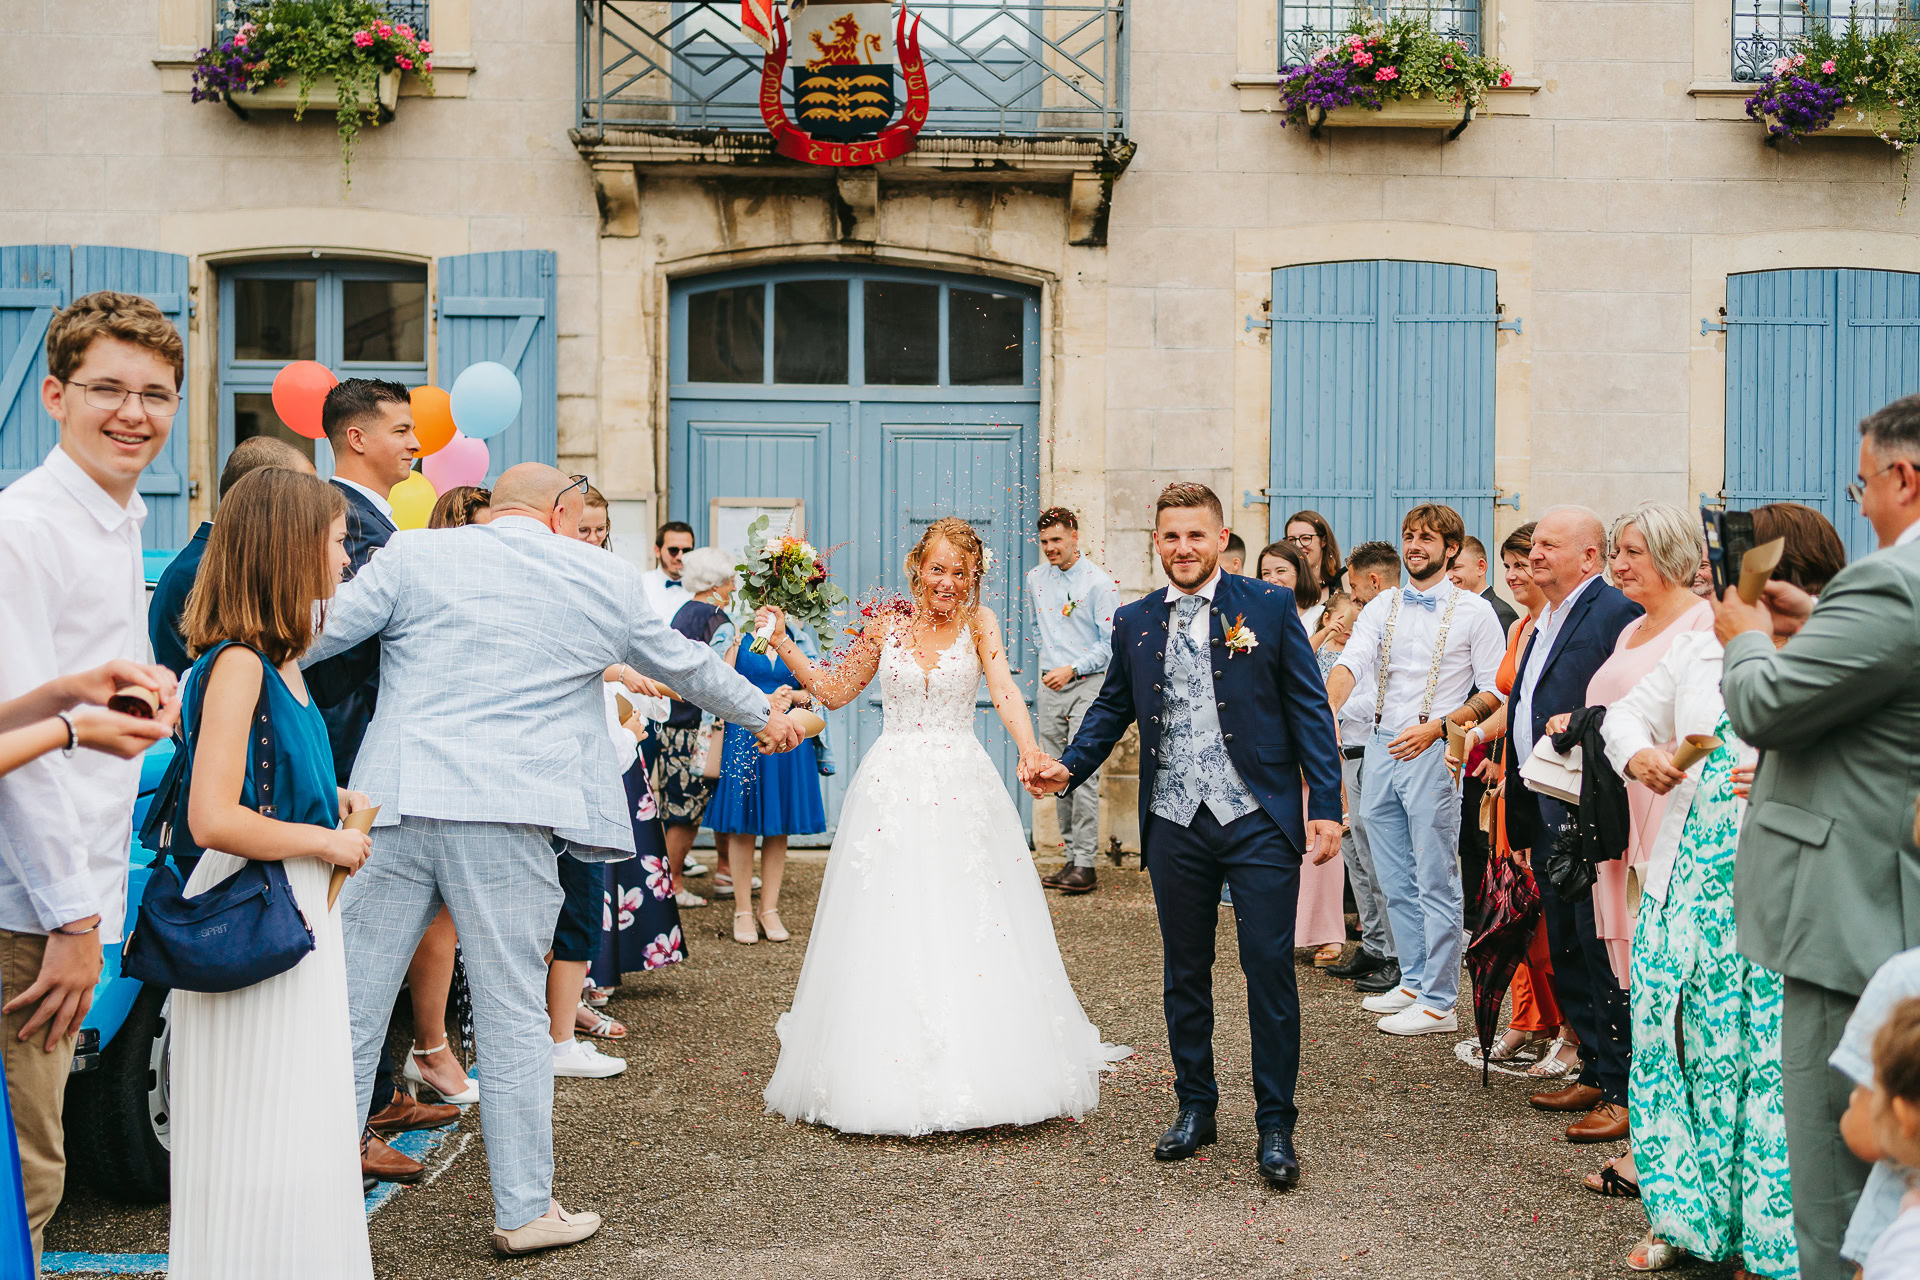 Des mariés se tiennent la main, souriants, alors qu'ils traversent une foule d'invités devant un bâtiment aux volets bleus et aux bacs à fleurs. Dans cette magnifique photo de reportage de mariage, les invités applaudissent et tiennent des ballons.